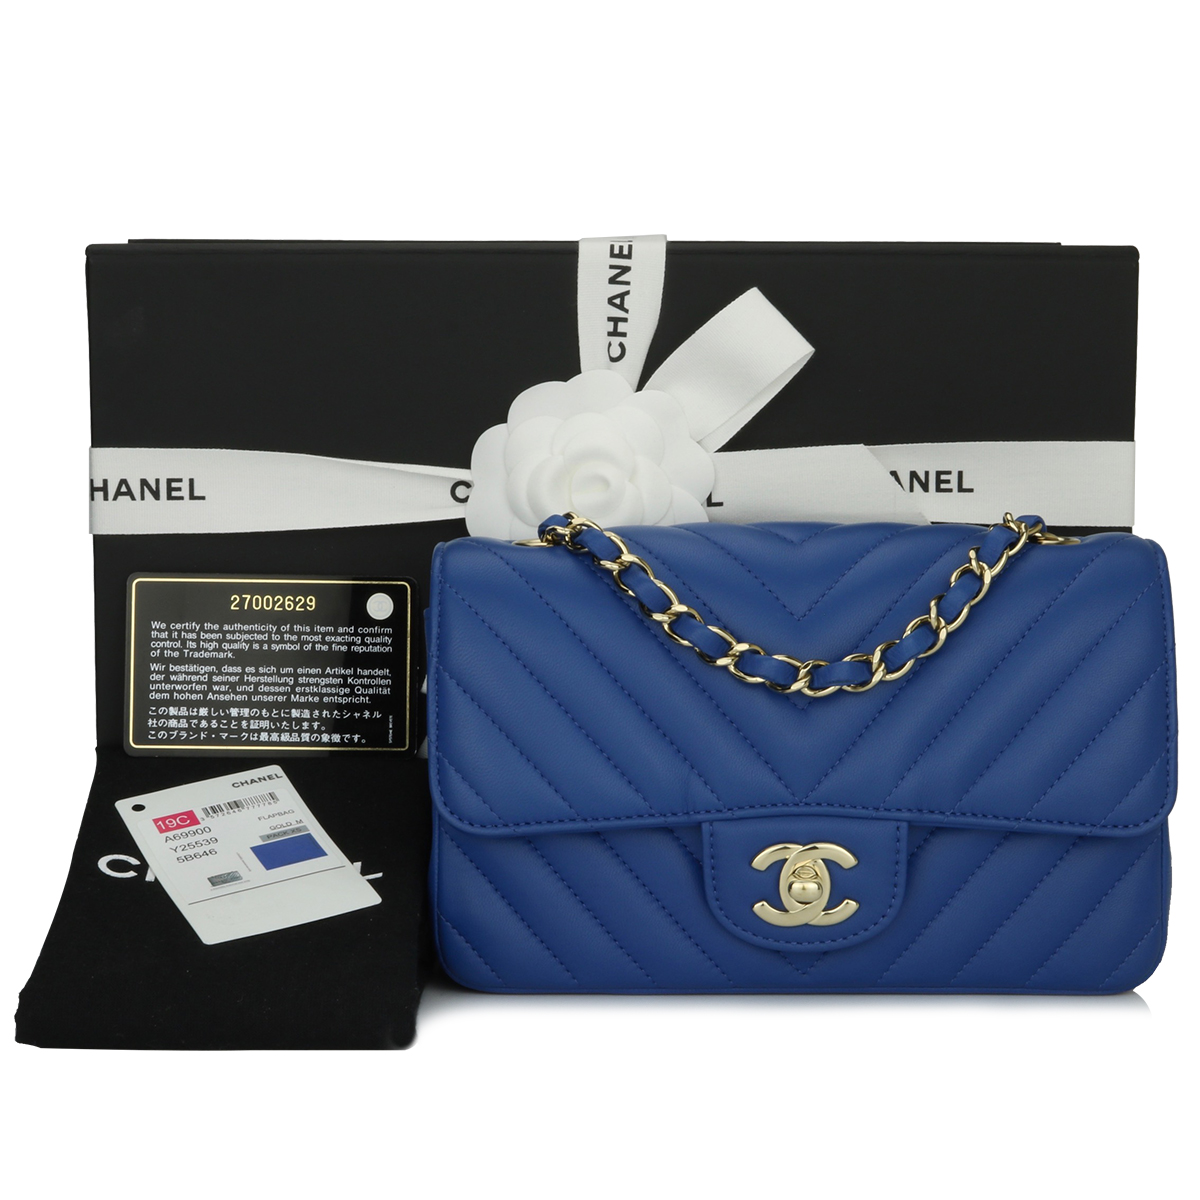 Chanel Classic Flap Mini Rectangular Bag